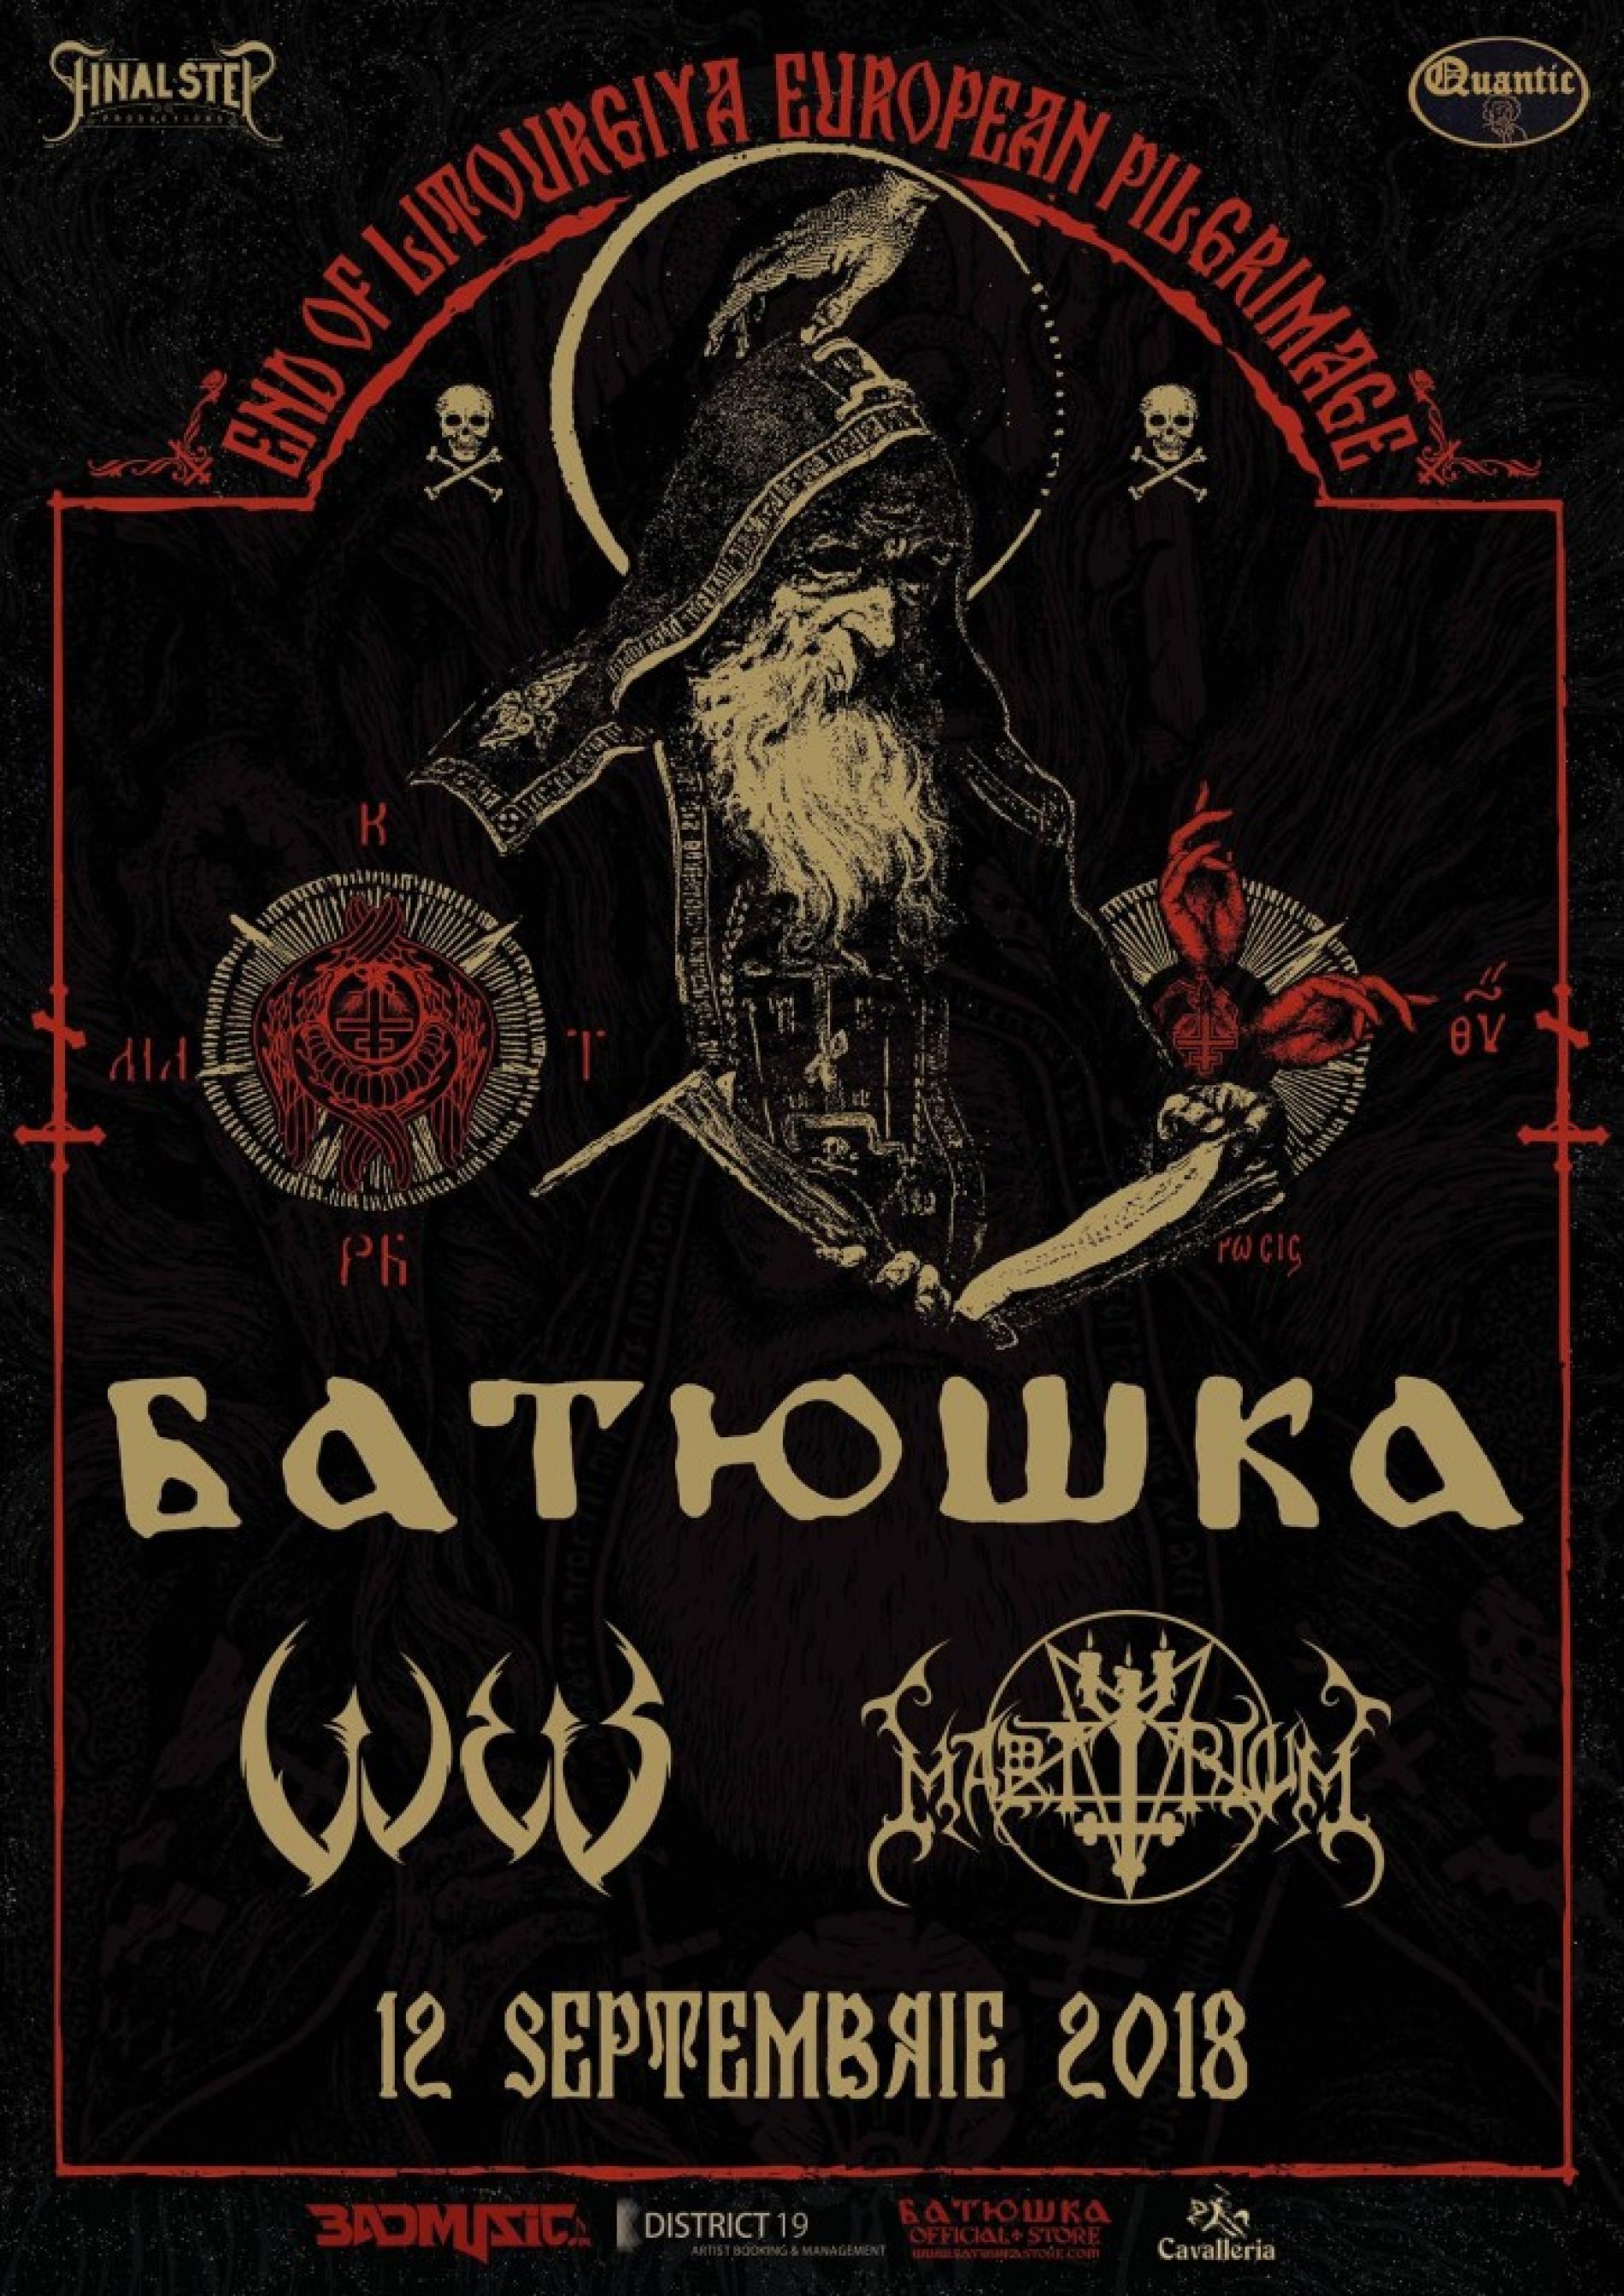 W.E.B. și MartYriuM vor cânta în deschiderea concertului Batushka din Quantic